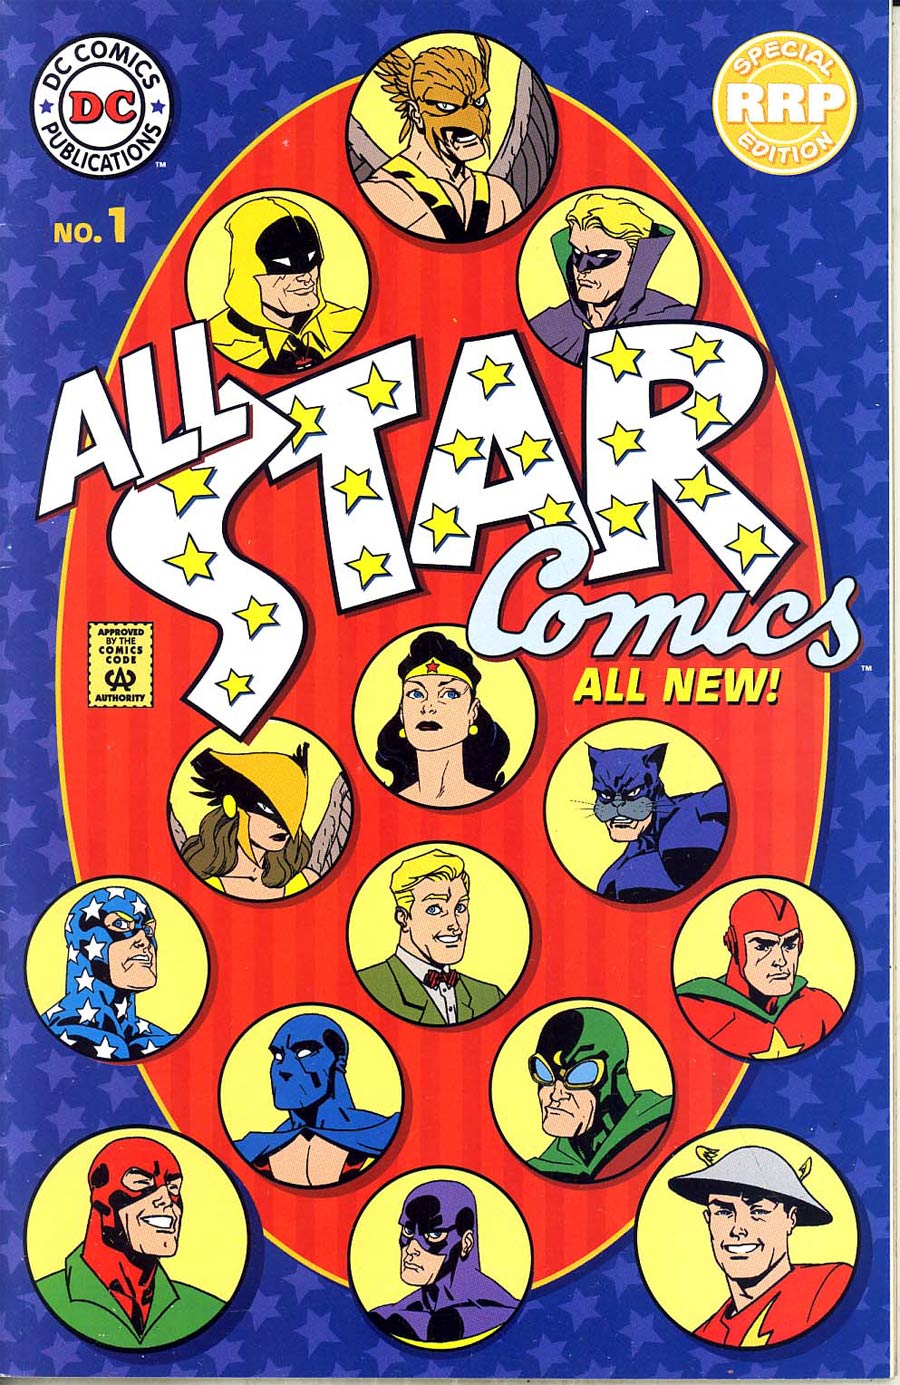 All Star Comics Vol 2 #1 Special RRP Edition